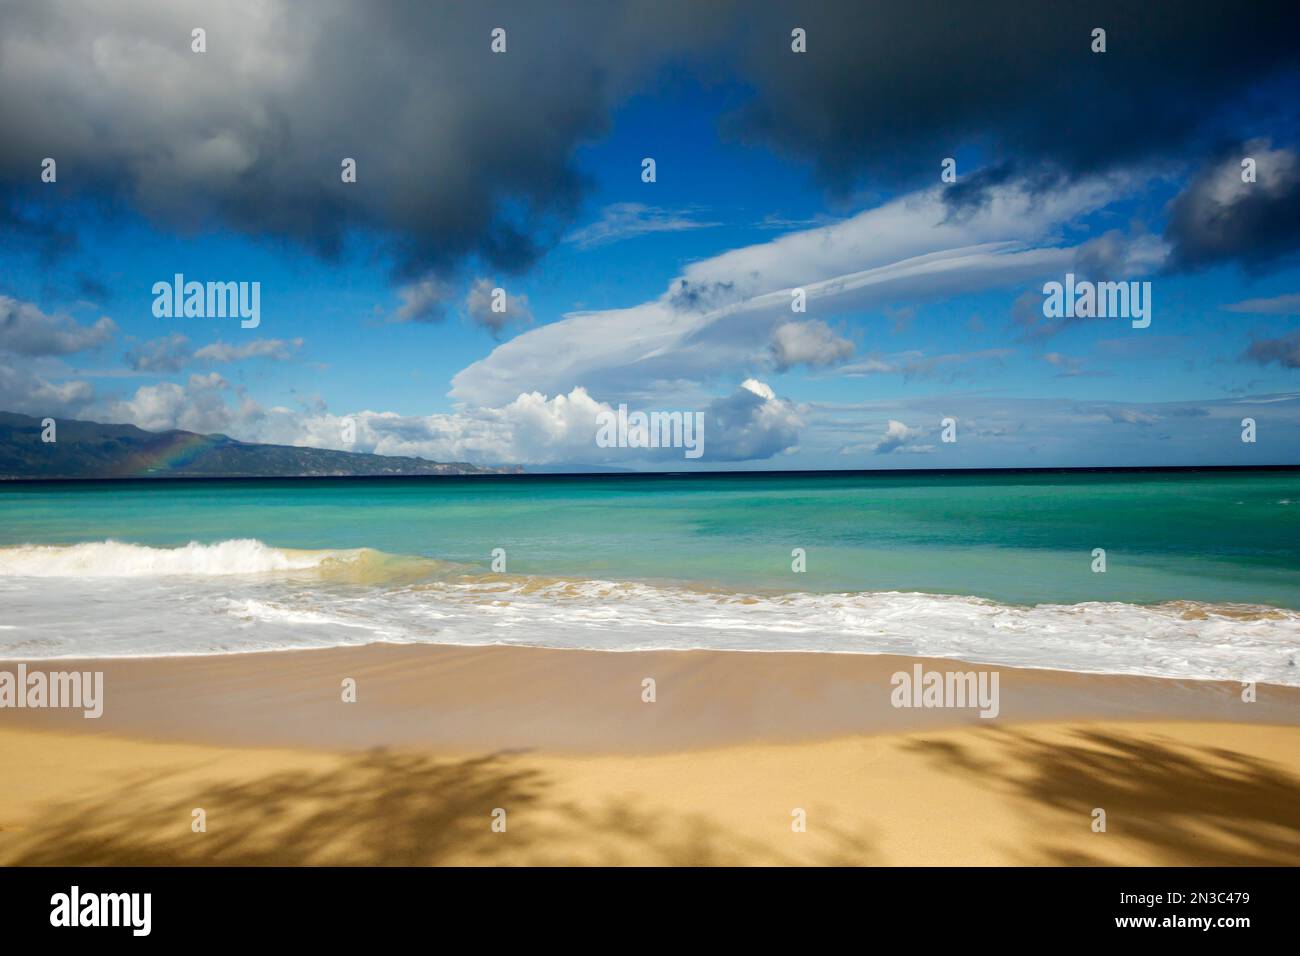 Mischung aus Regenwolken und Cumulus Wolken über dem tropischen, türkisfarbenen Wasser und ruhigen Sandstrand am Baldwin Beach Stockfoto